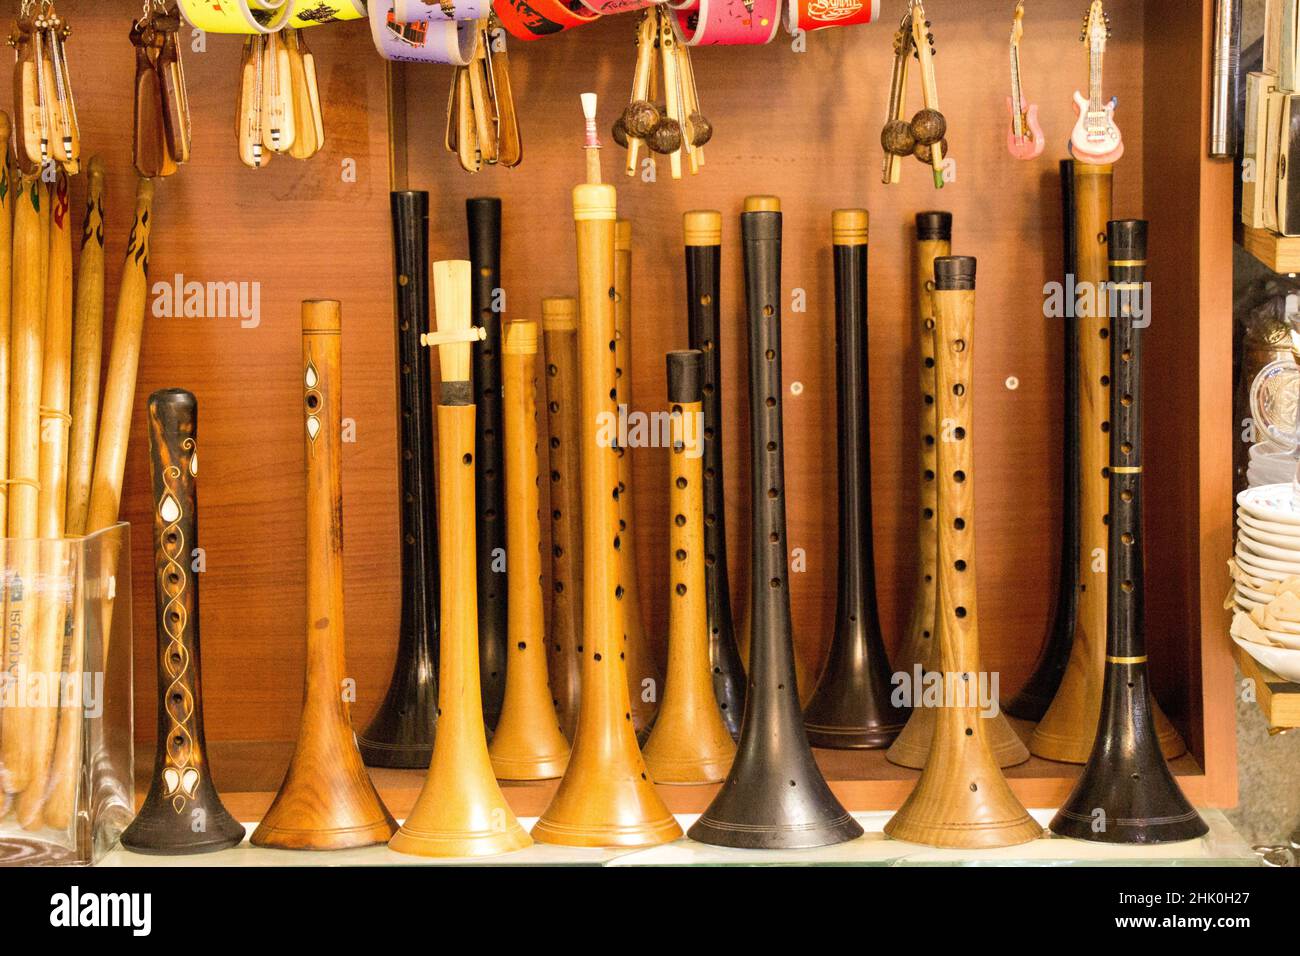 Docenas de flautas de madera hechas a mano o pipa. Foto de stock